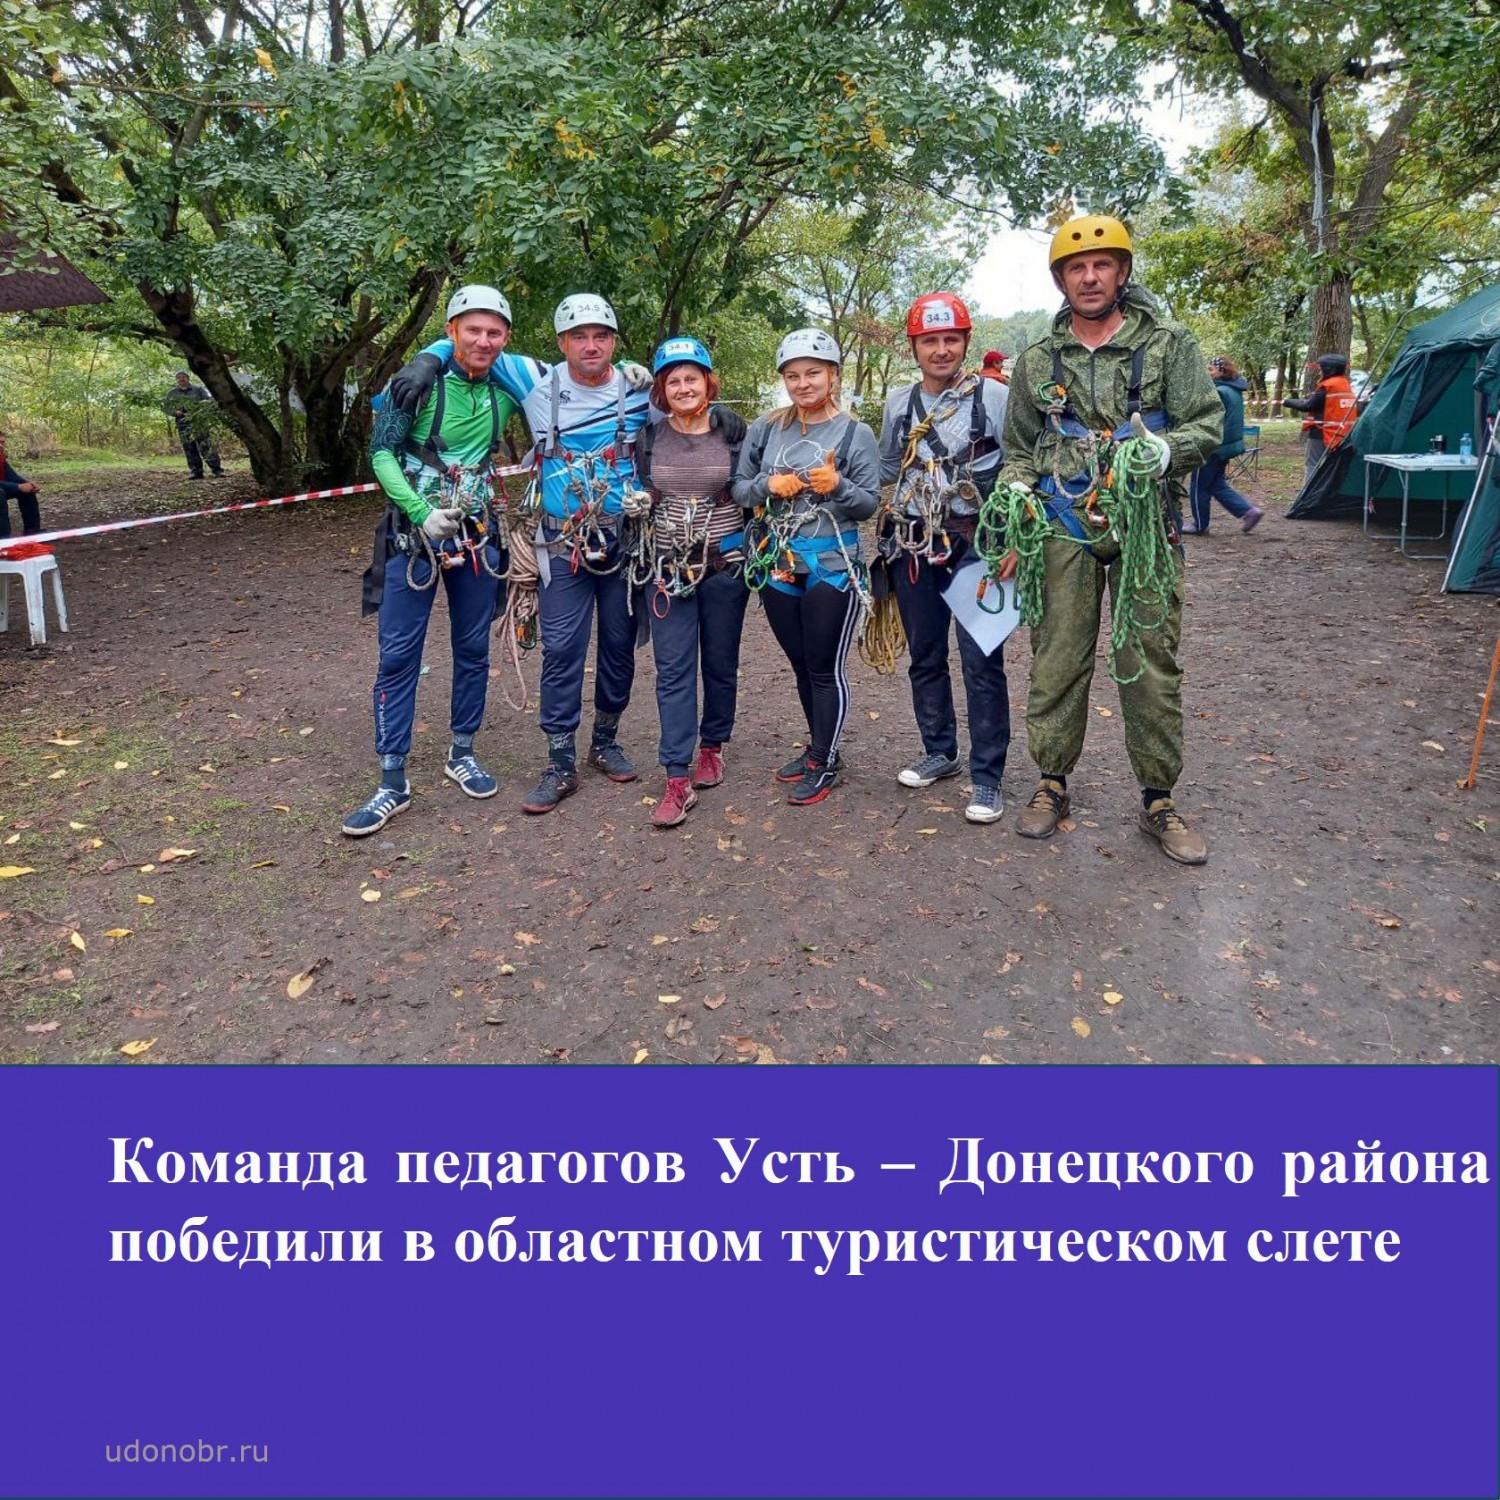 Команда педагогов Усть-Донецкого района победила в областном туристическом слете